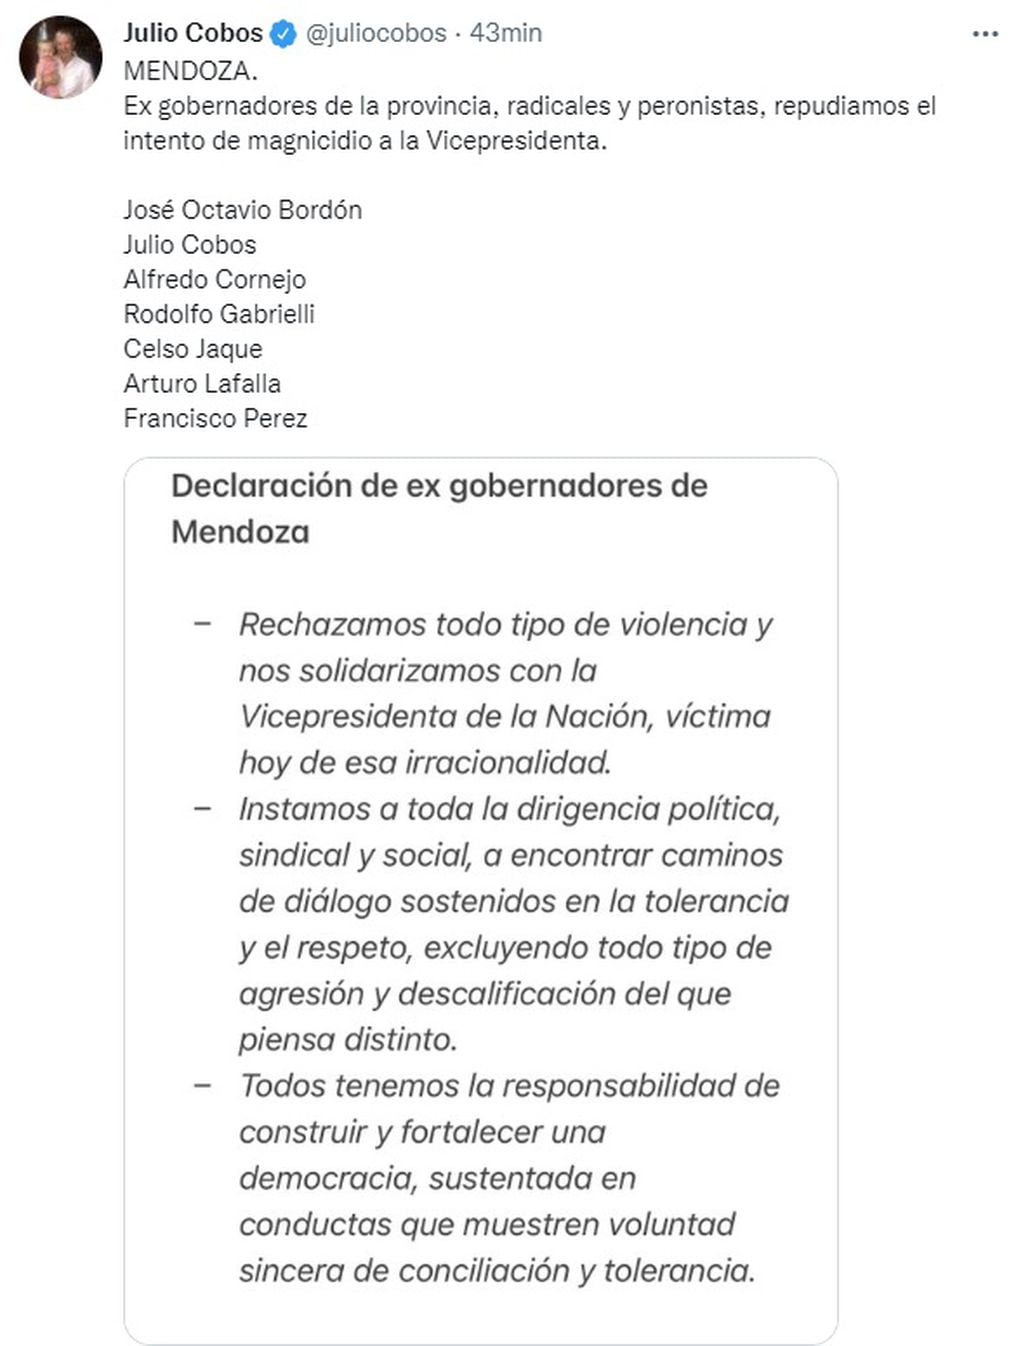 Repudio de ex gobernadores de Mendoza por el atentado que sufrió CFK.